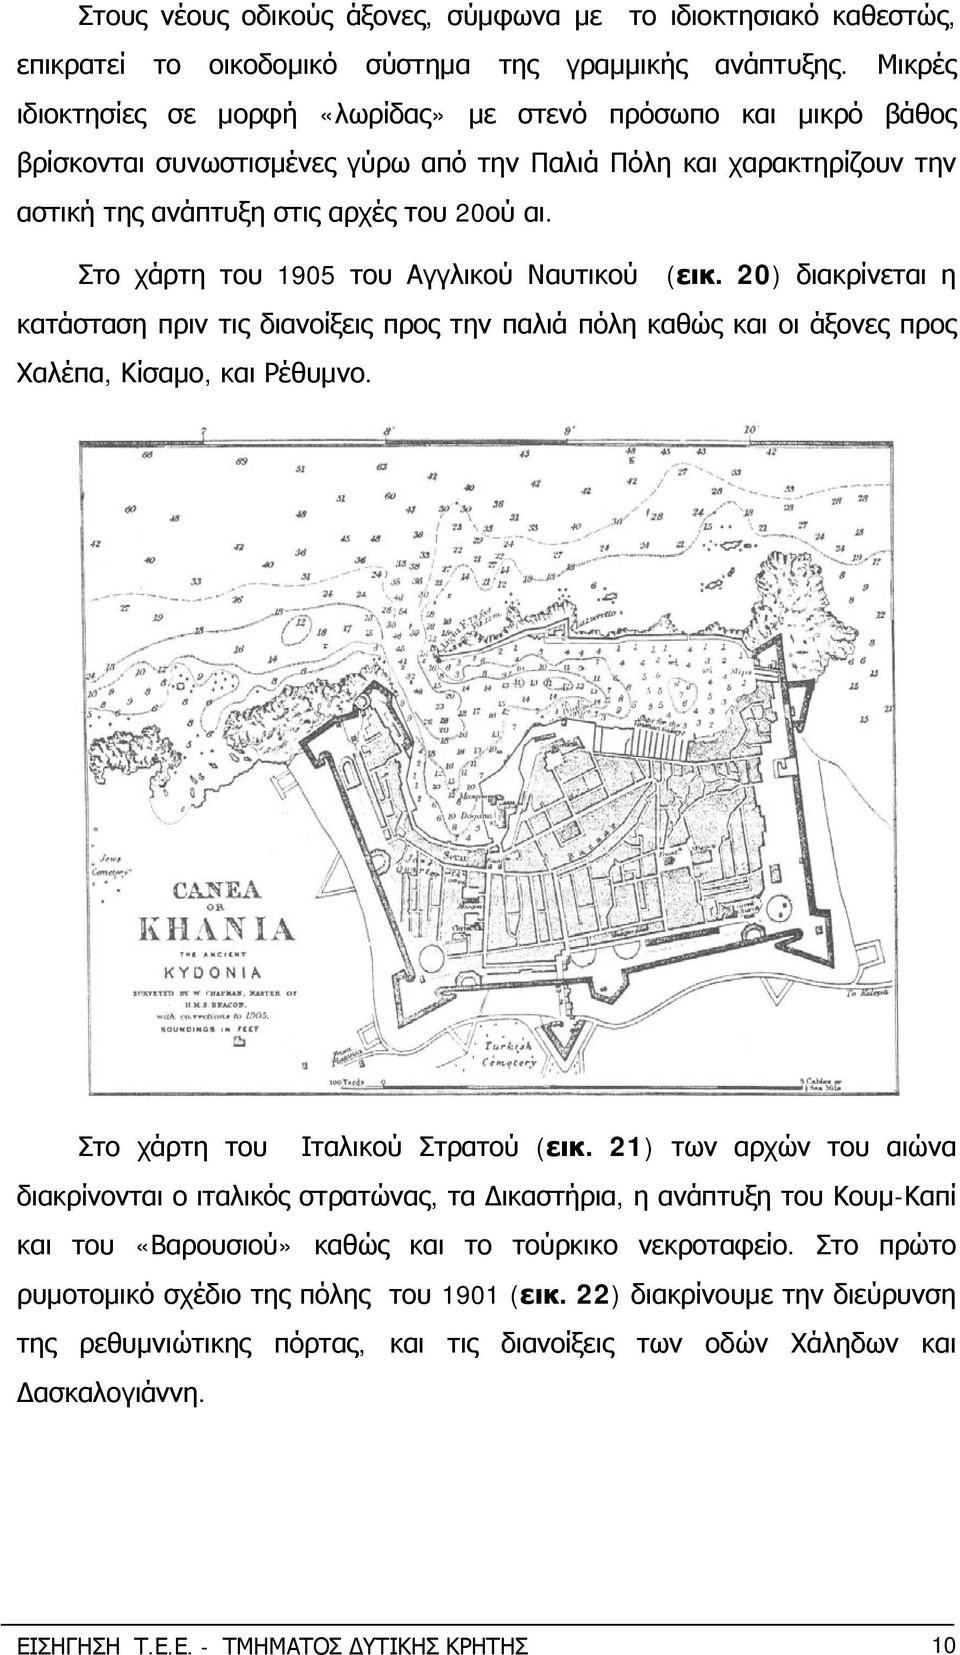 Στο χάρτη του 1905 του Αγγλικού Ναυτικού (εικ. 20) διακρίνεται η κατάσταση πριν τις διανοίξεις προς την παλιά πόλη καθώς και οι άξονες προς Χαλέπα, Κίσαμο, και Ρέθυμνο.